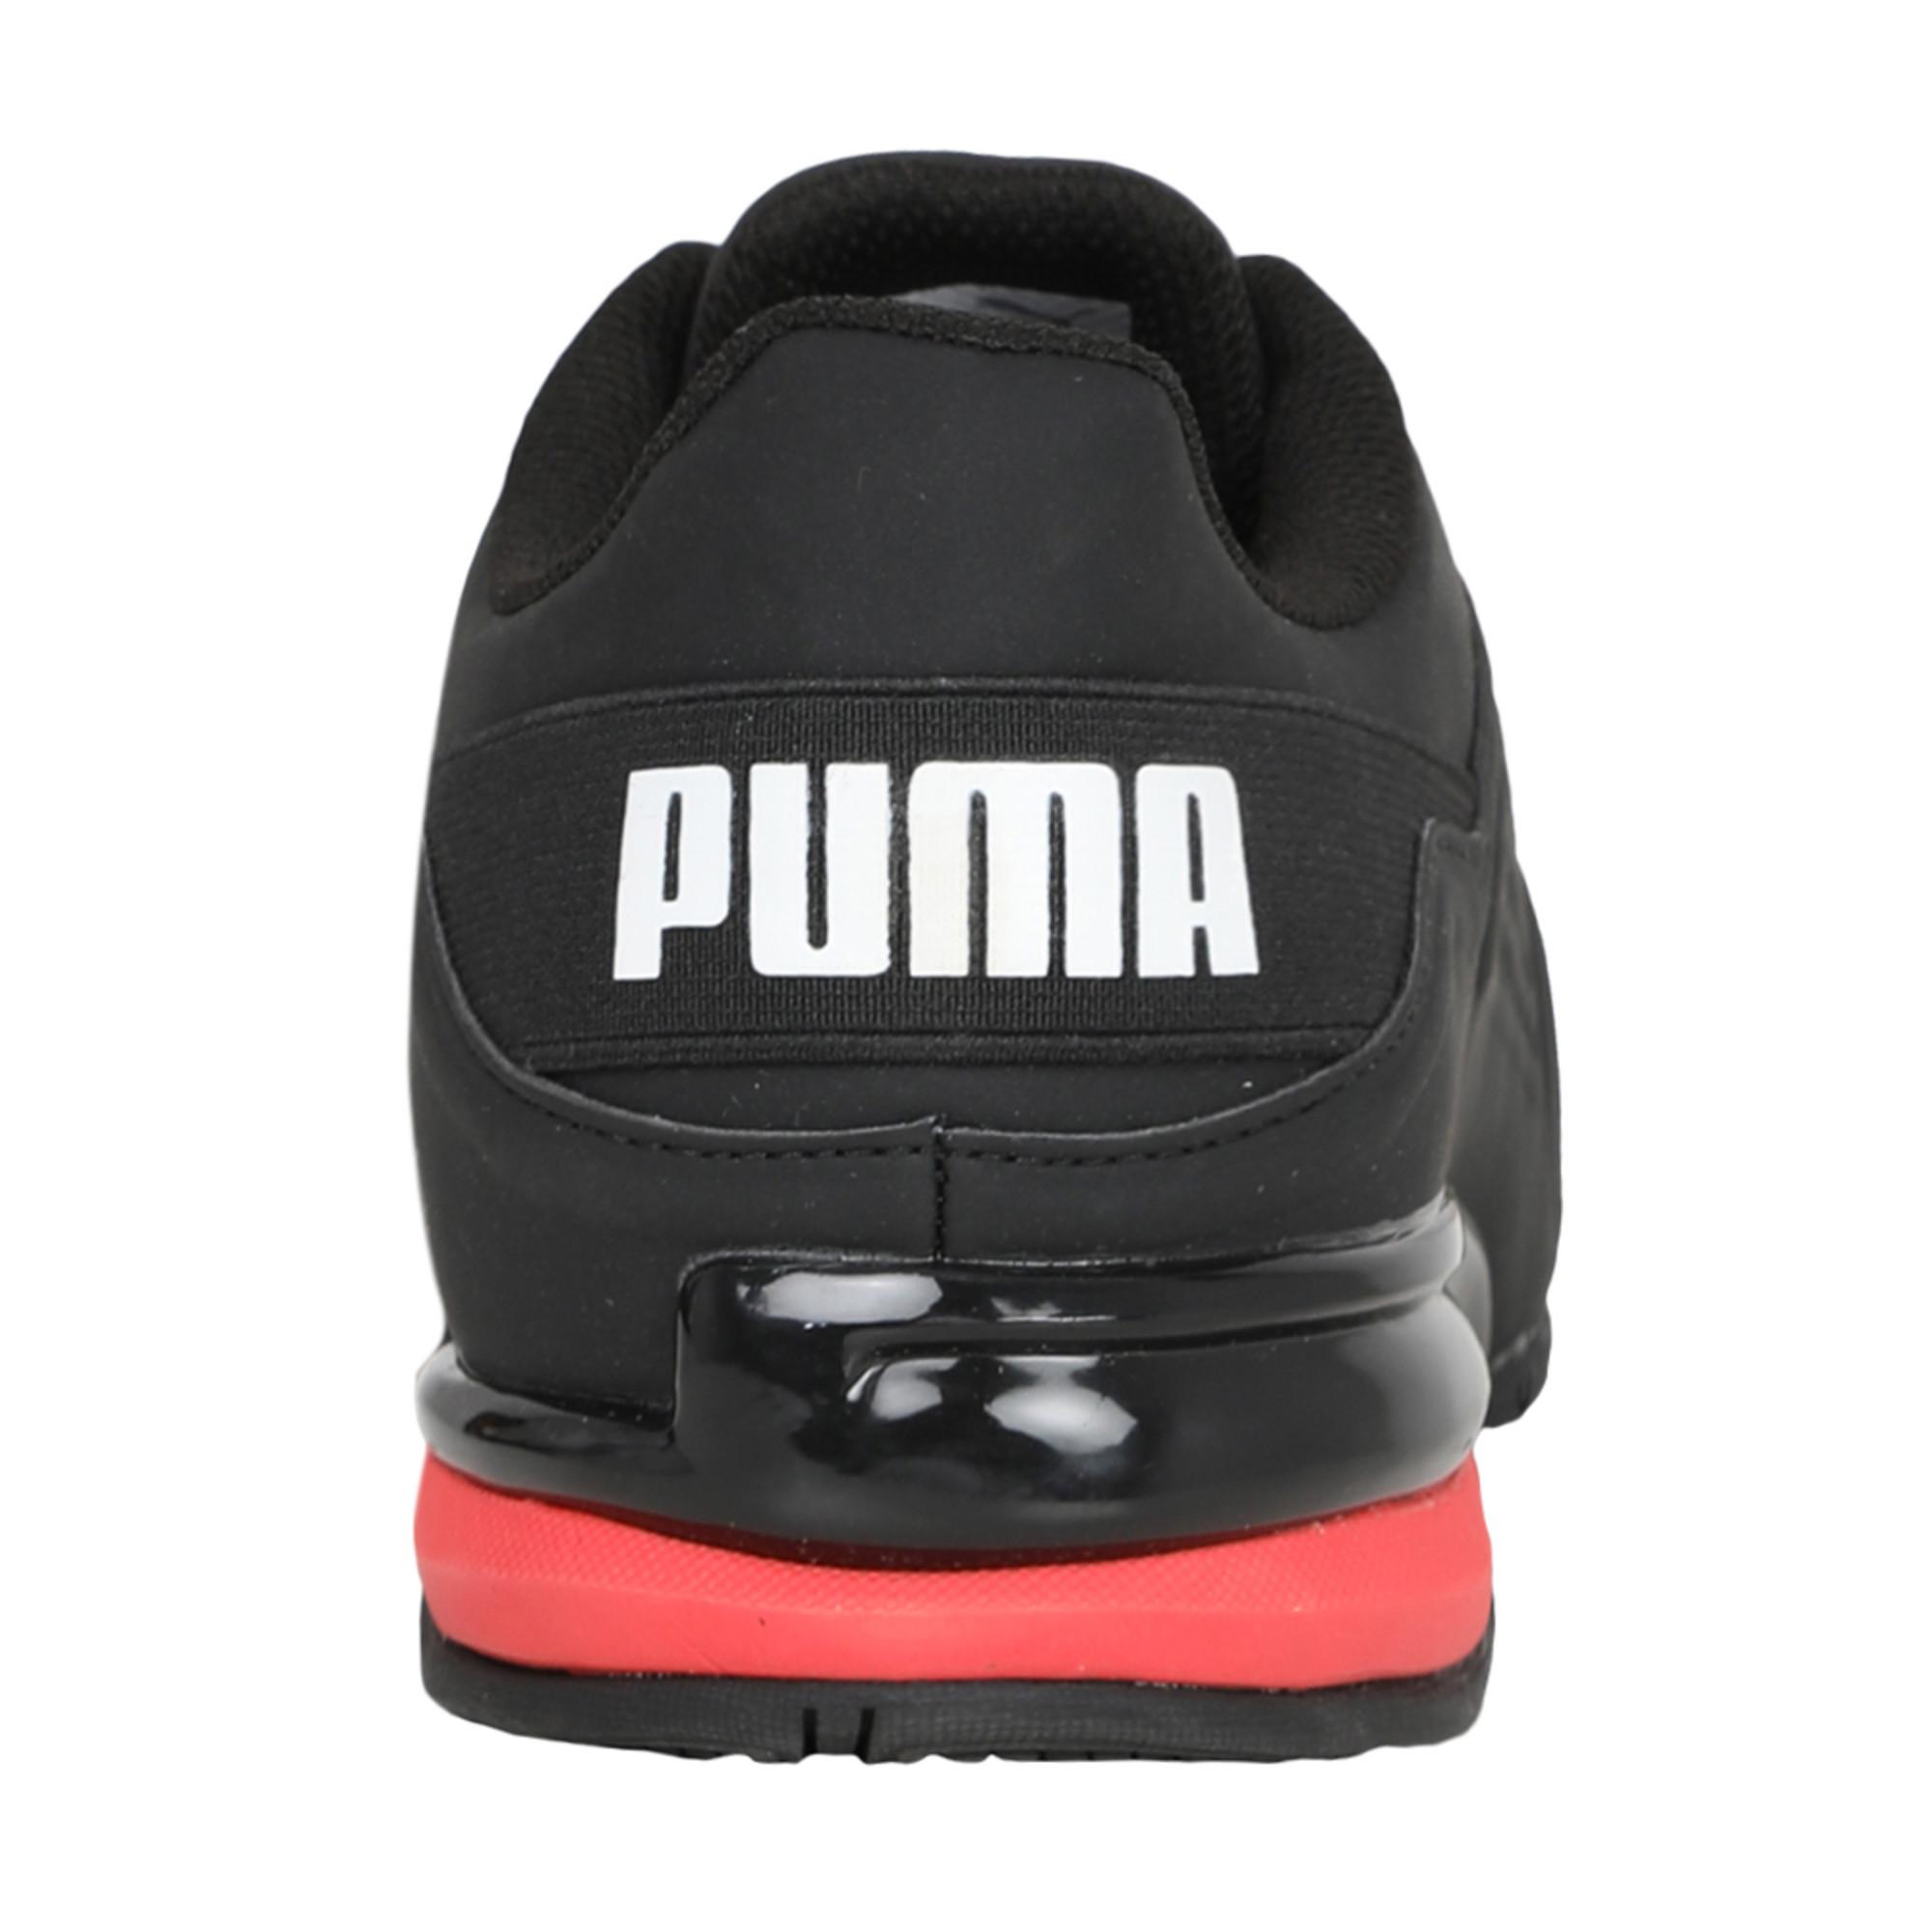 Buy > puma viz runner men's running shoes > in stock